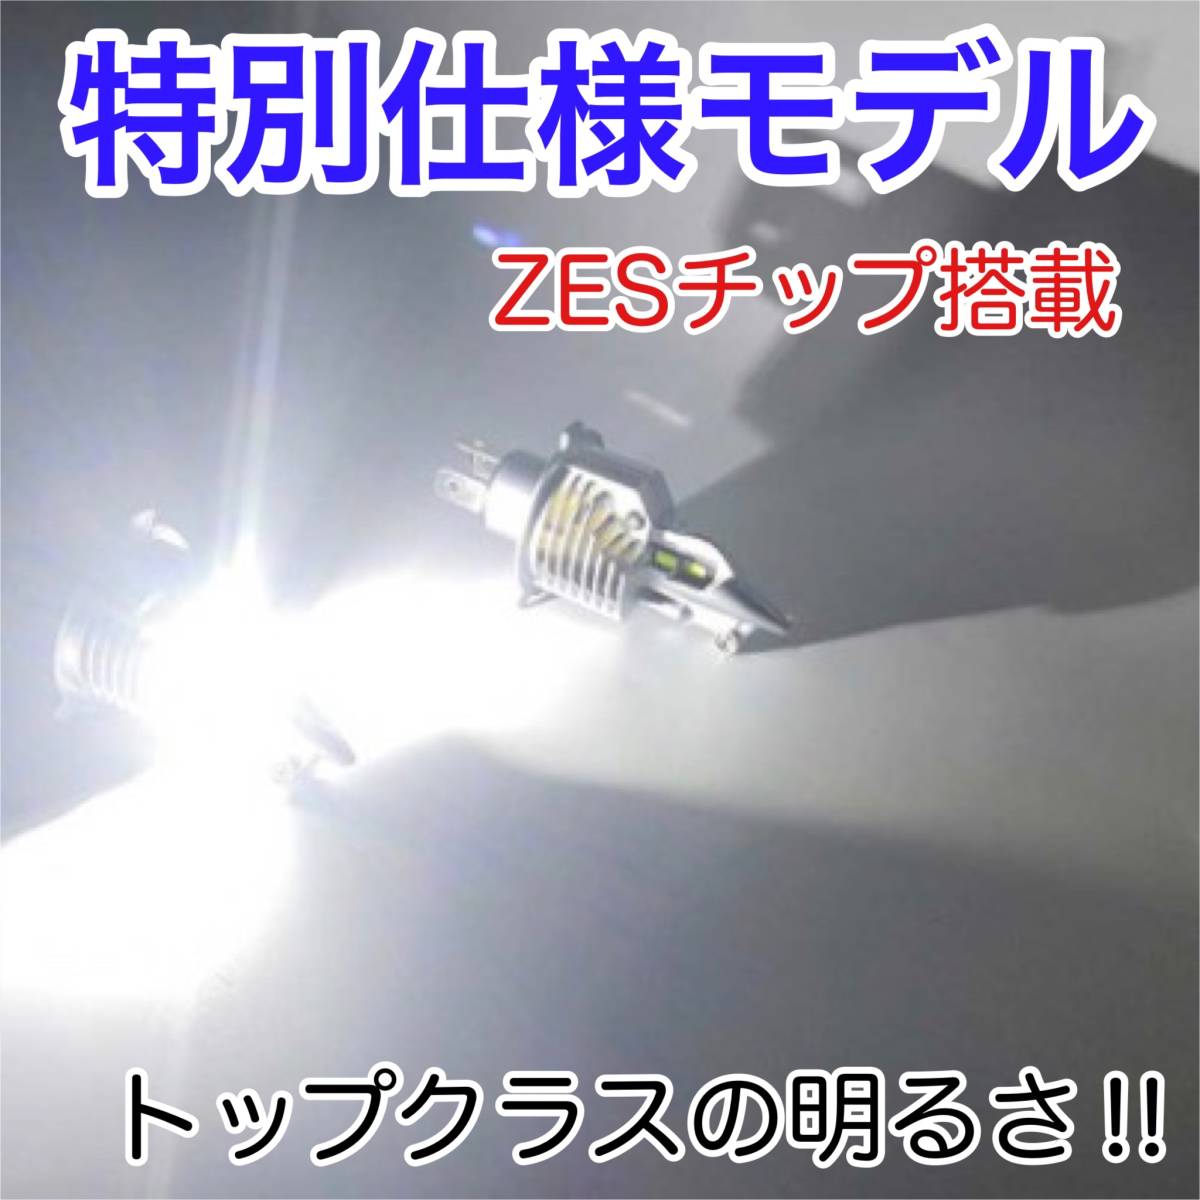 SUZUKI スズキ GSF1200S GV75B LEDヘッドライト H4 Hi/Lo バルブ バイク用 1灯 S25 テールランプ2個 ホワイト 交換用_画像2